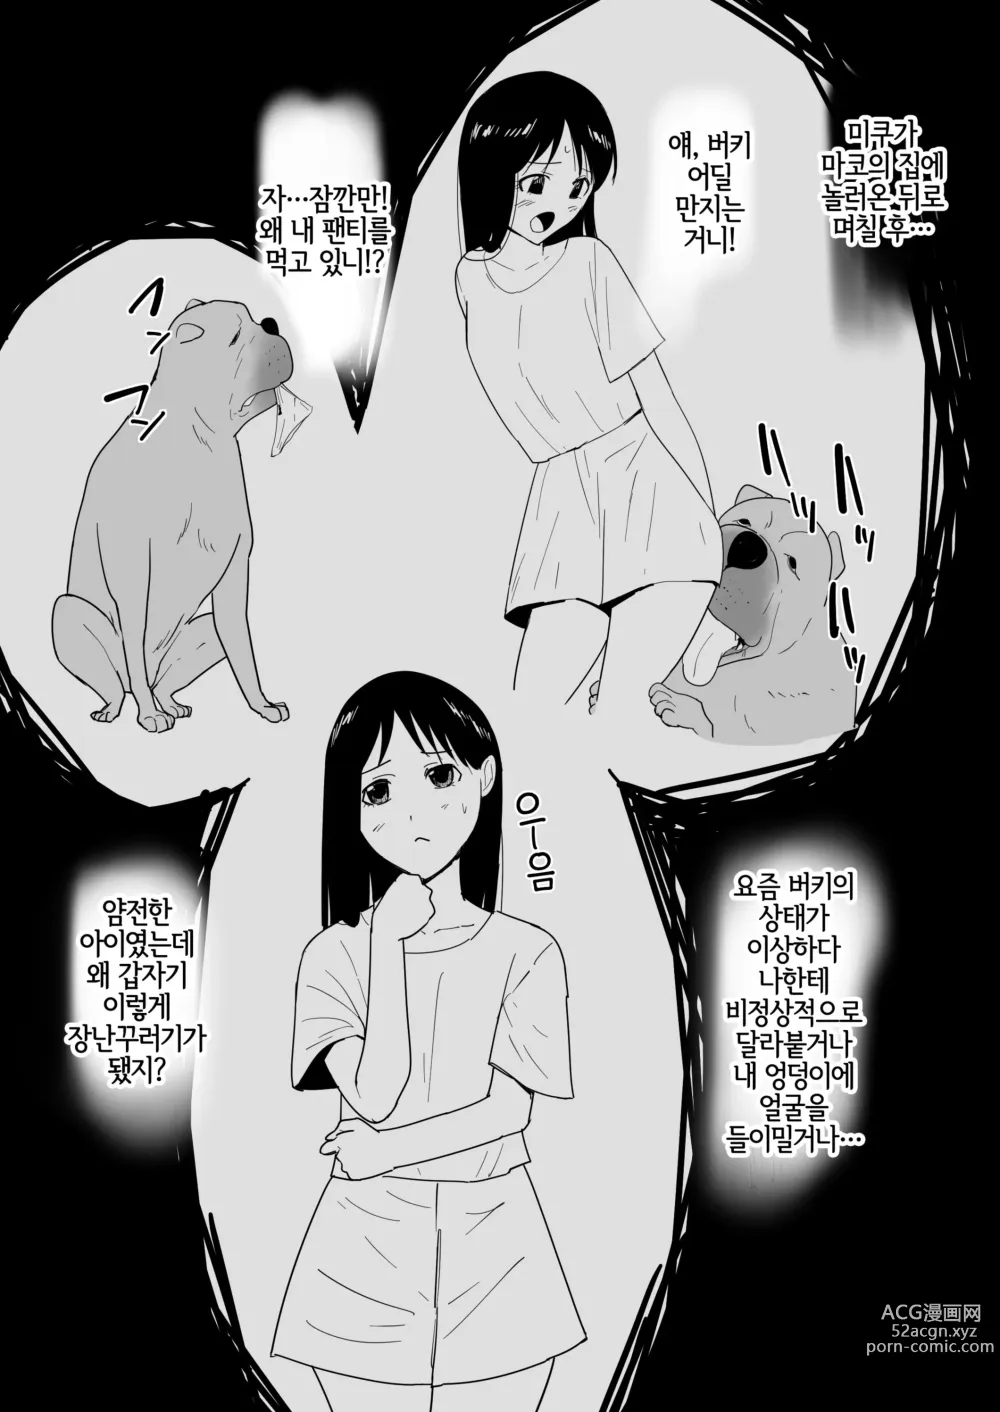 Page 39 of doujinshi 친구의 애완견이랑